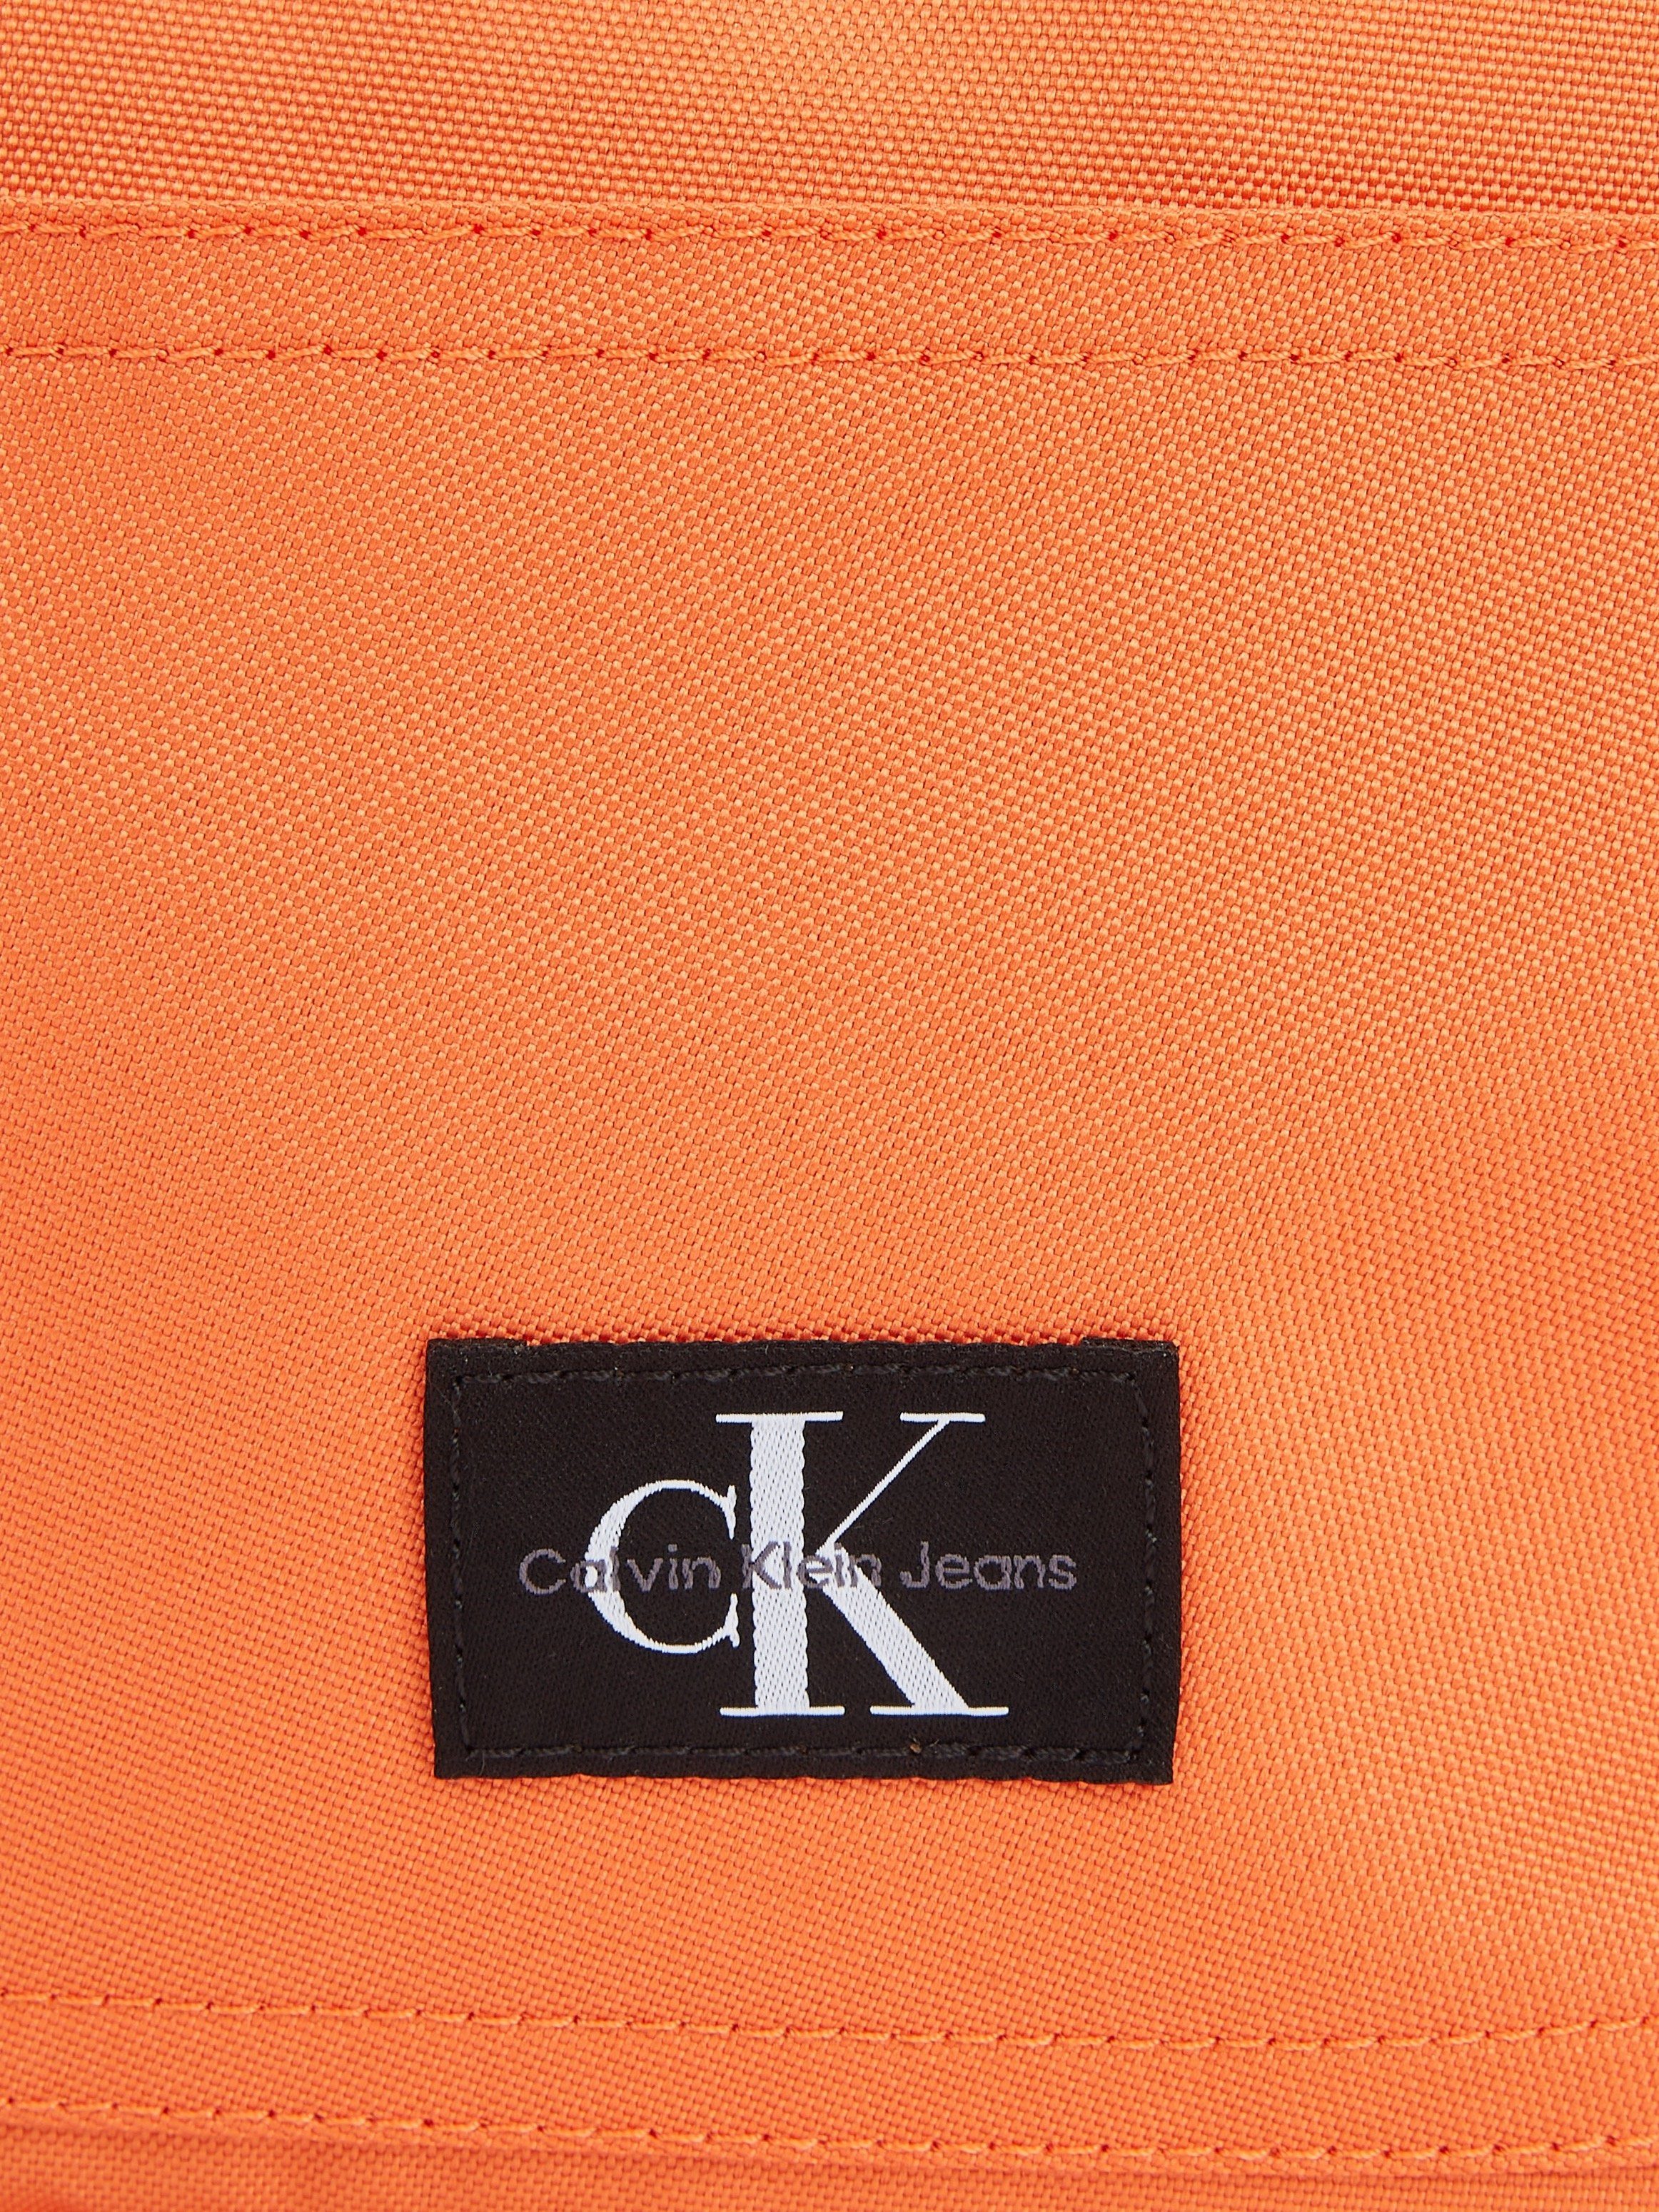 Calvin Klein Jeans in dezentem W, CAMPUS SPORT BP40 koralle ESSENTIALS Cityrucksack Design